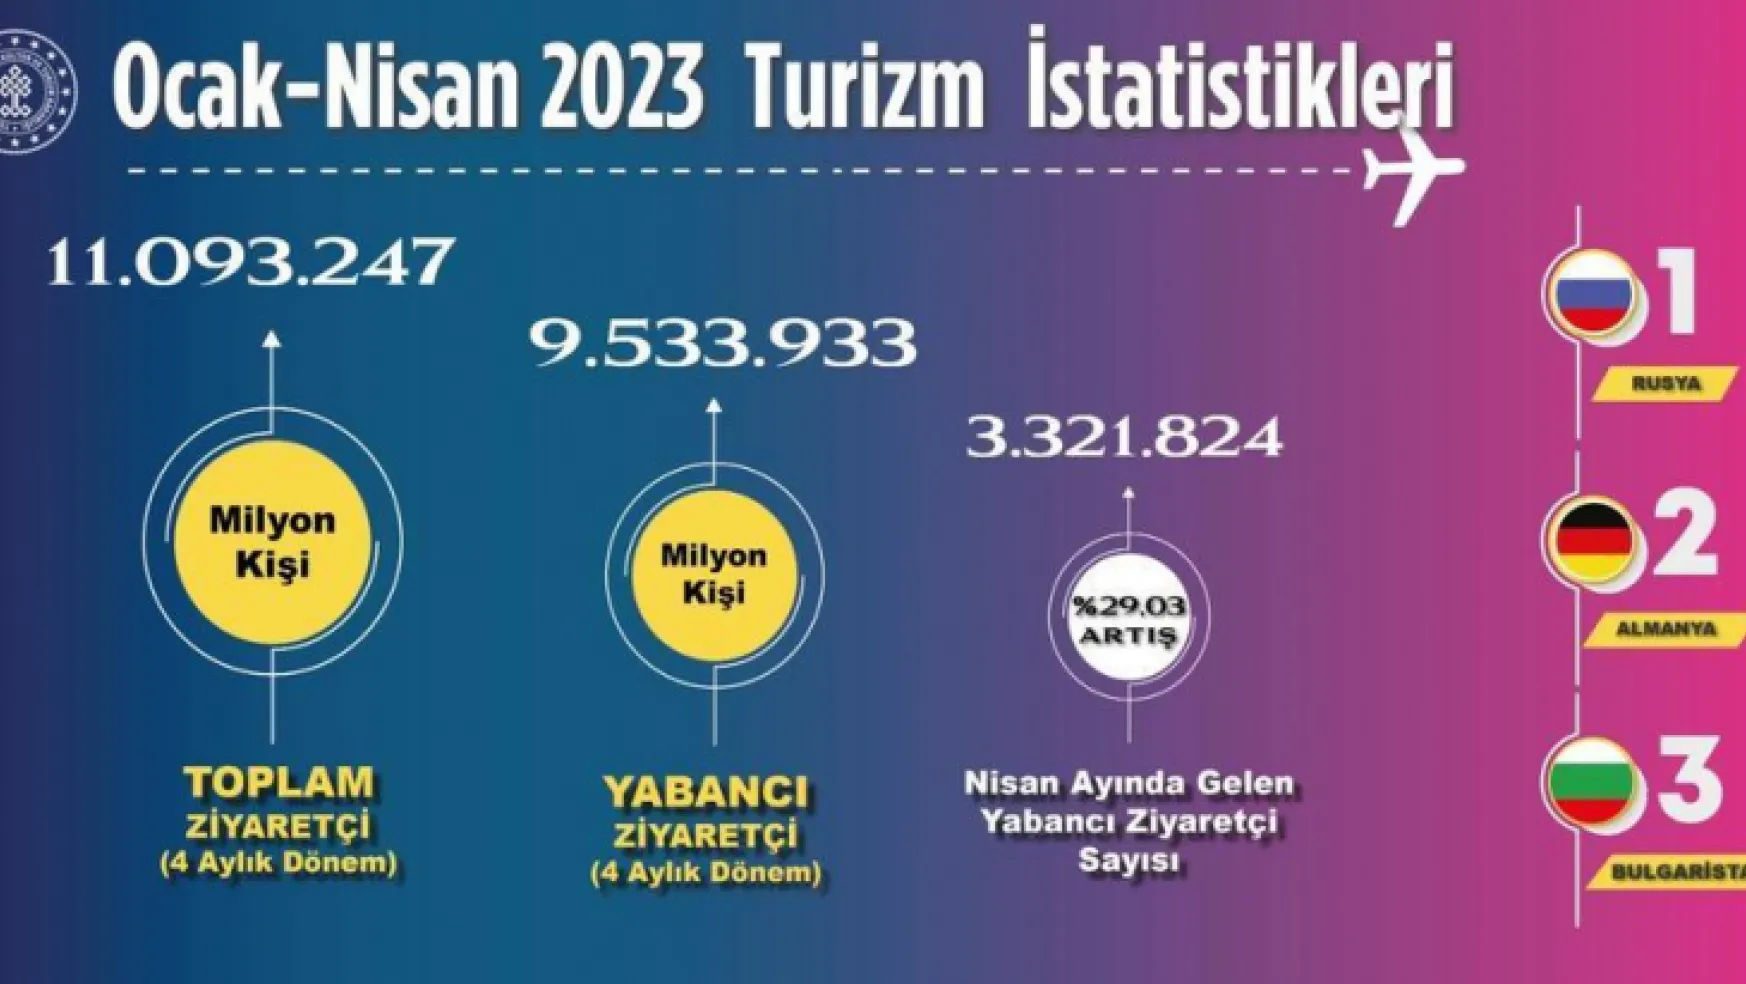 Türkiye 2023 yılının ilk 4 ayında toplam 11 milyon 93 bin 247 ziyaretçiyi ağırladı.